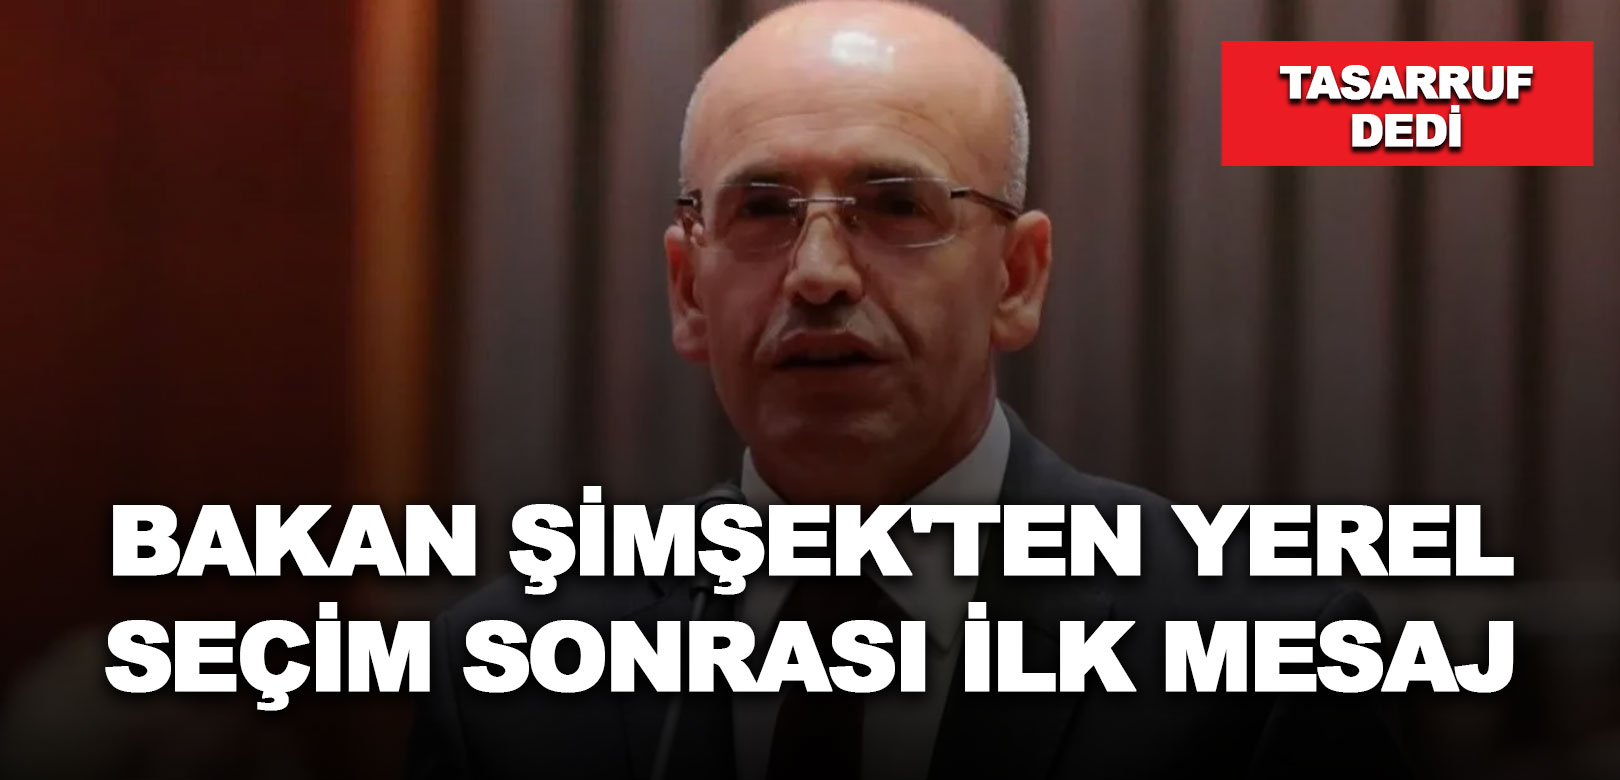 Yerel seçimden sonra Mehmet Şimşek'ten ilk mesaj